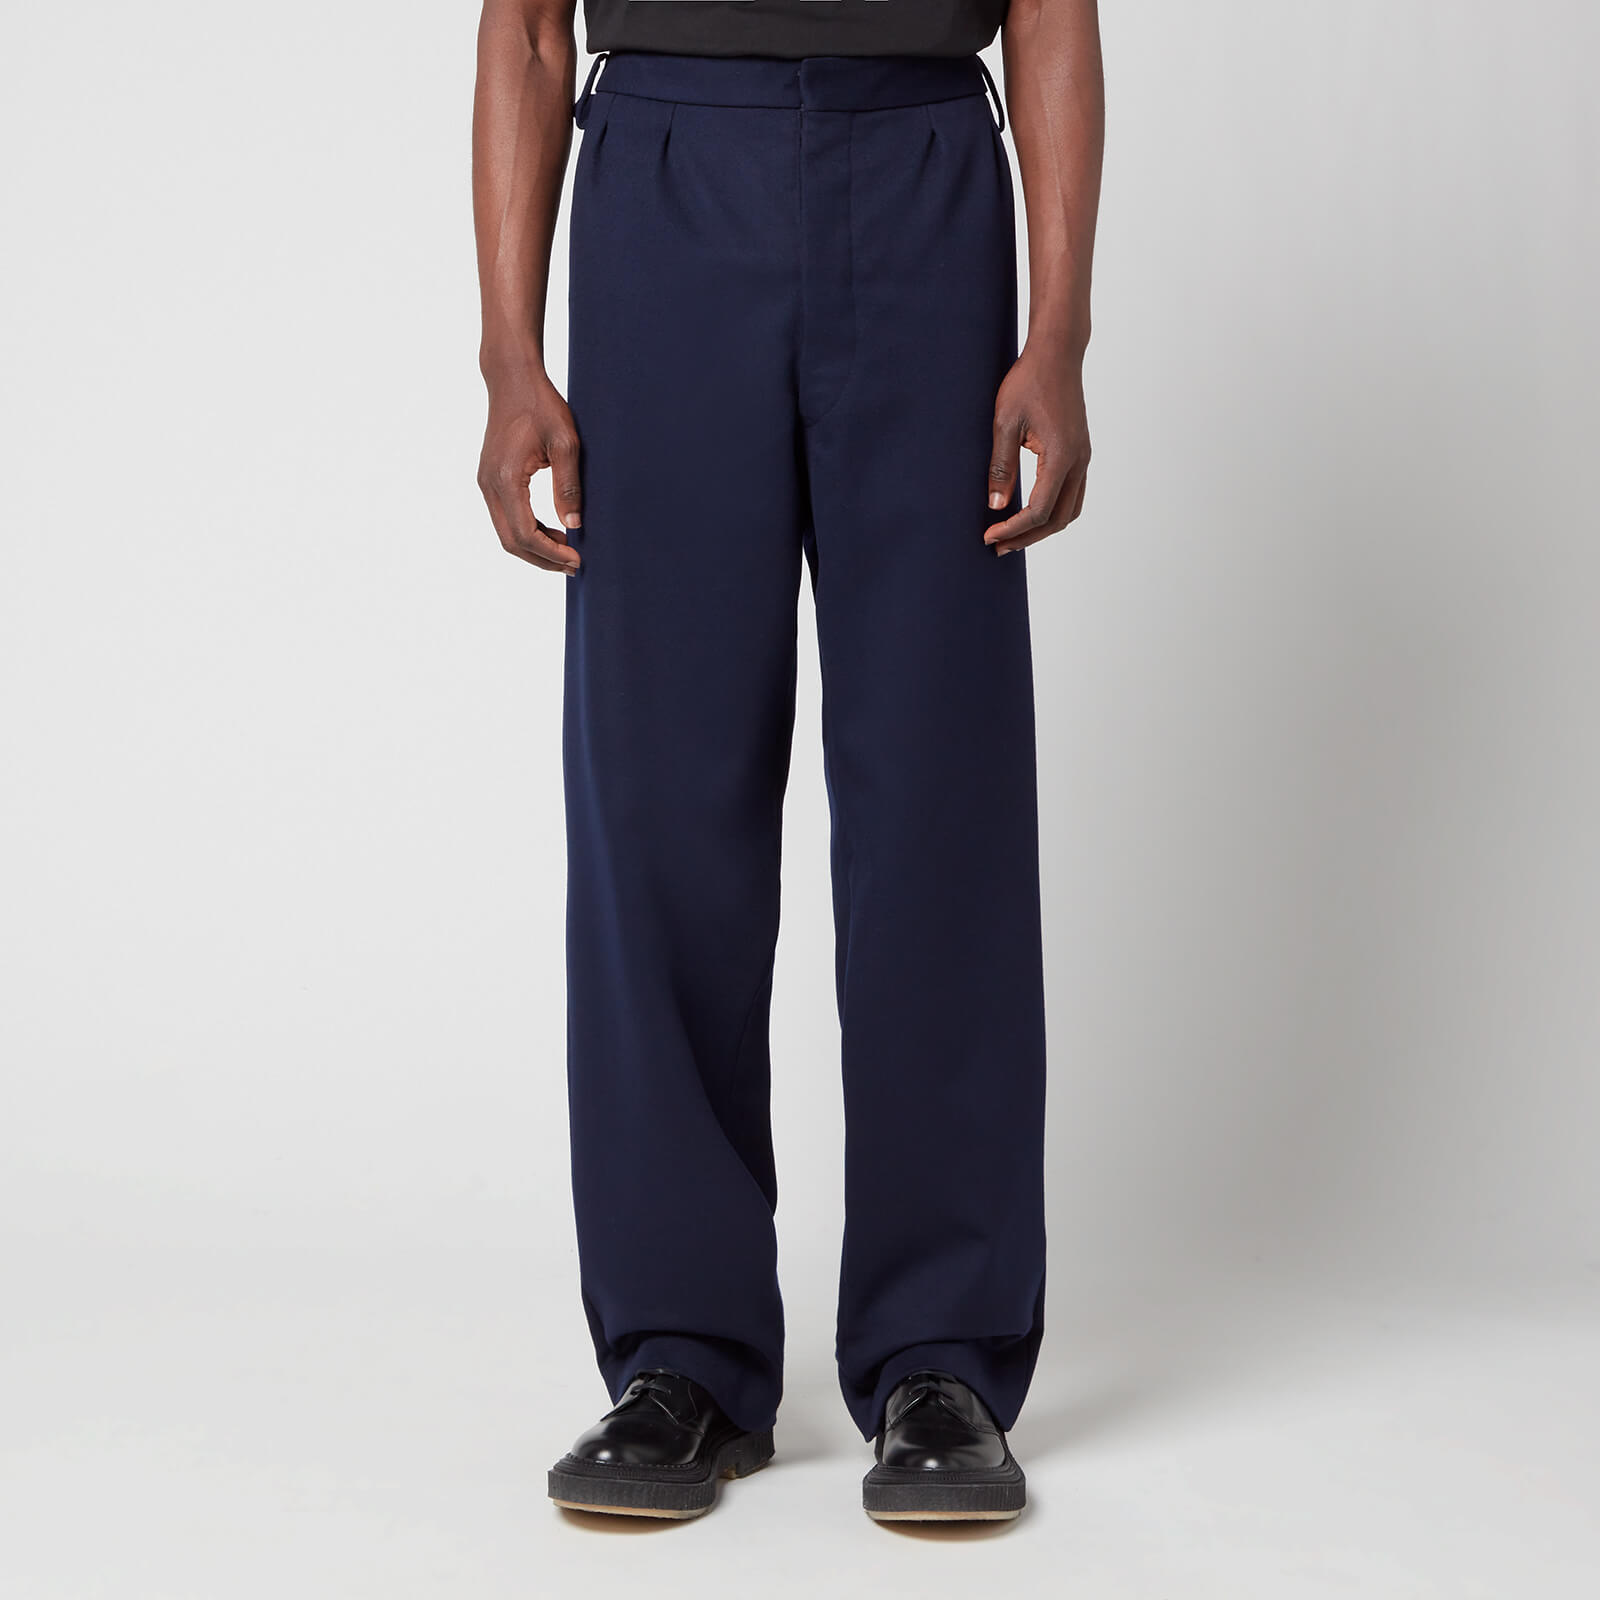 Maison Margiela Men's Straight Fit Classic Trousers - Navy - 50/L